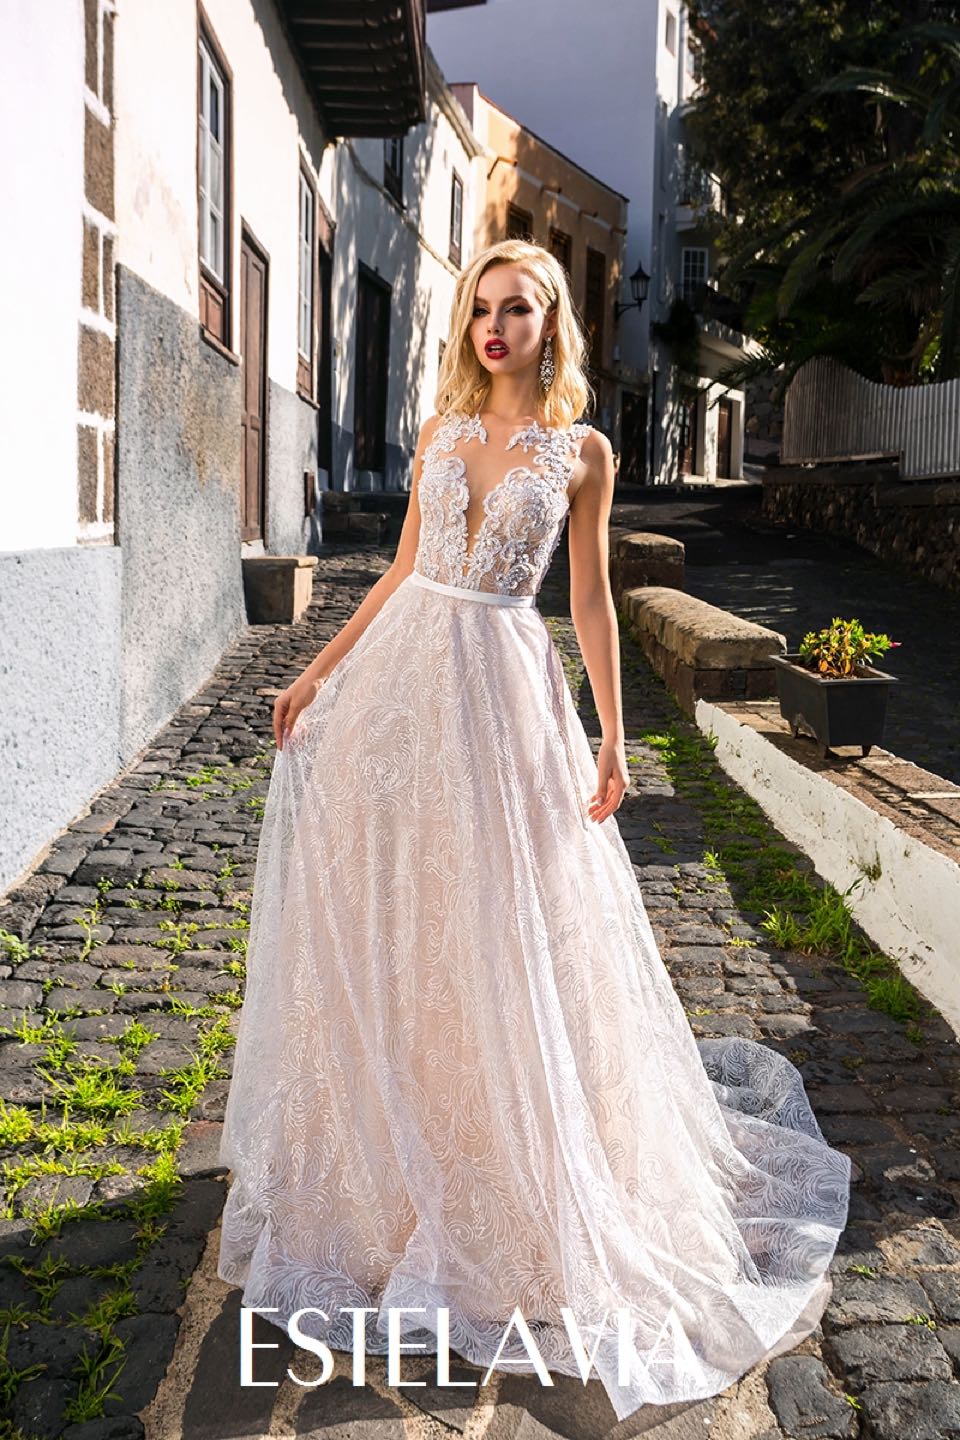 Свадебное платье Estelavia